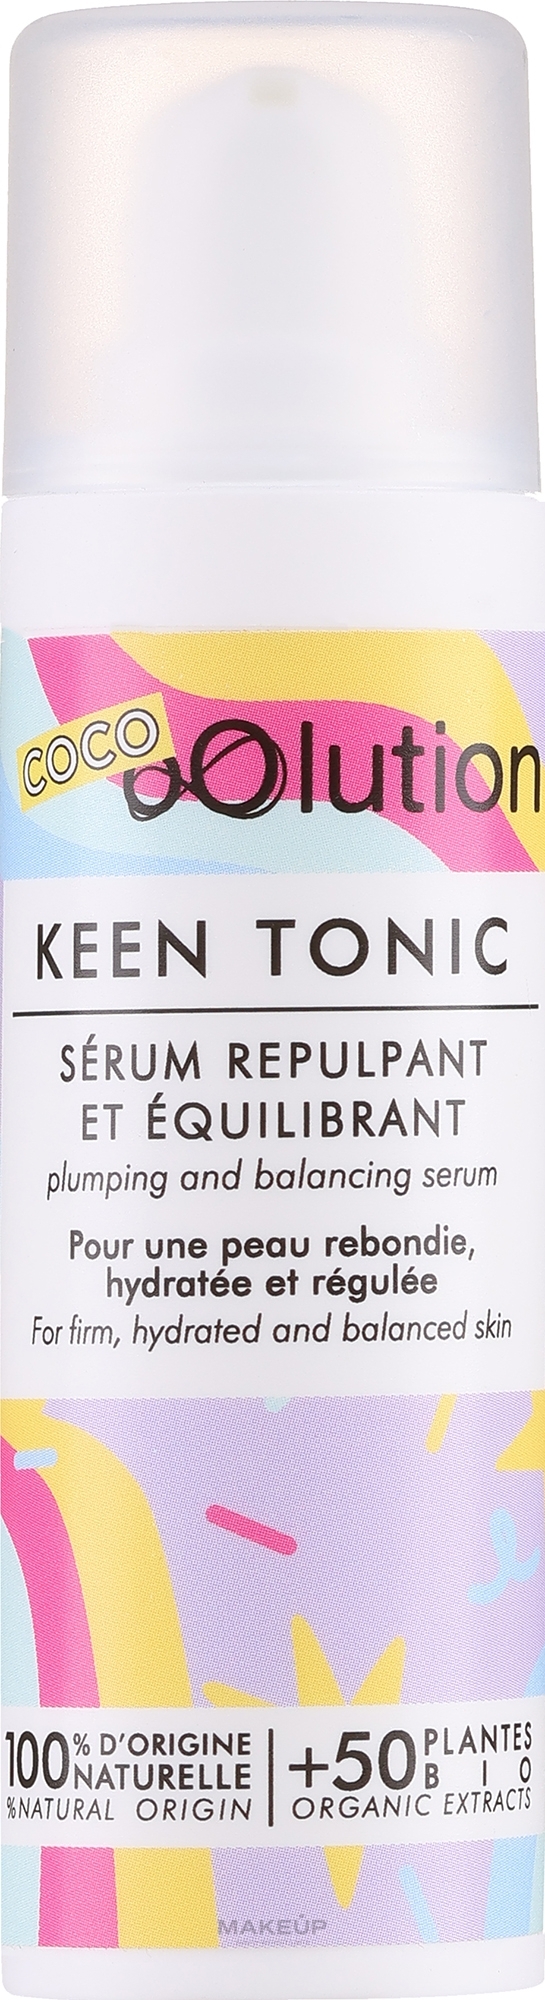 Органическая укрепляющая и увлажняющая сыворотка, восстанавливающая баланс кожи - oOlution Keen Tonic Plumping and Balancing Serum — фото 30ml